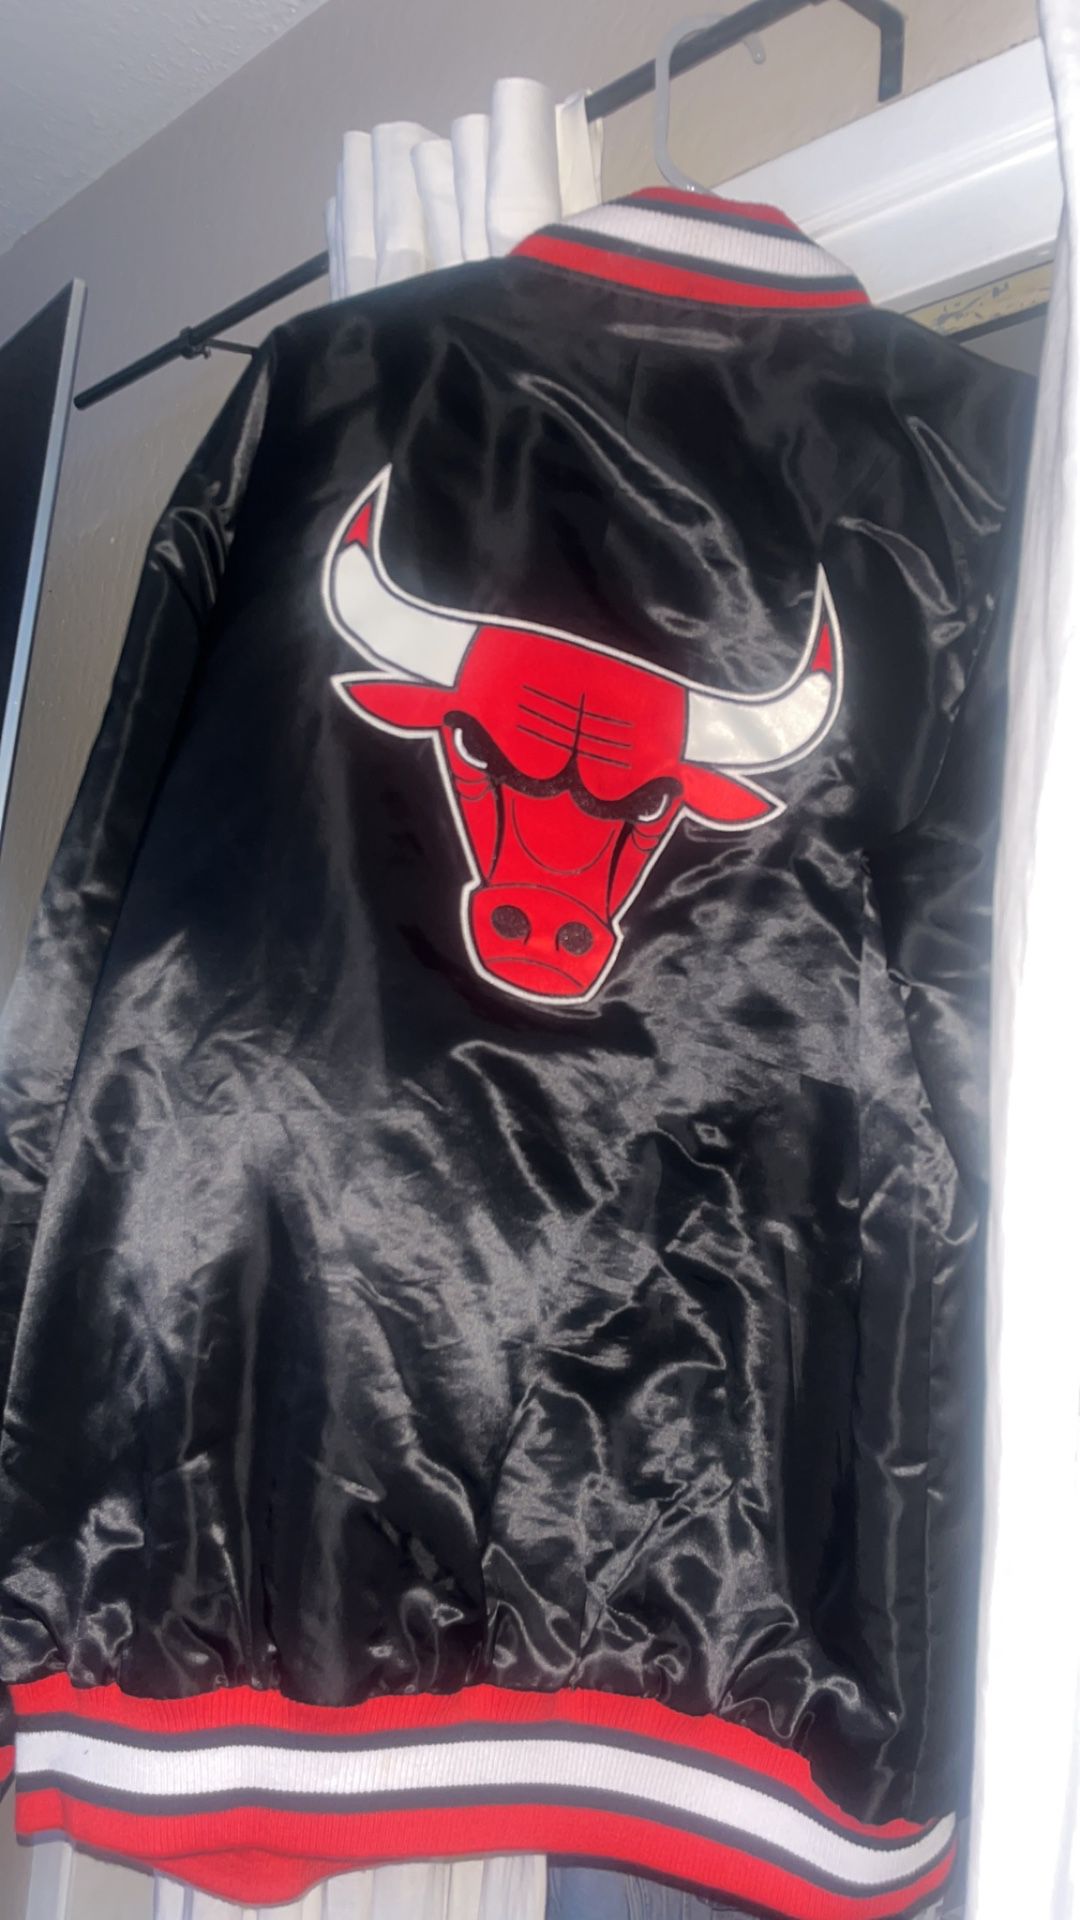 Bulls Jacket 